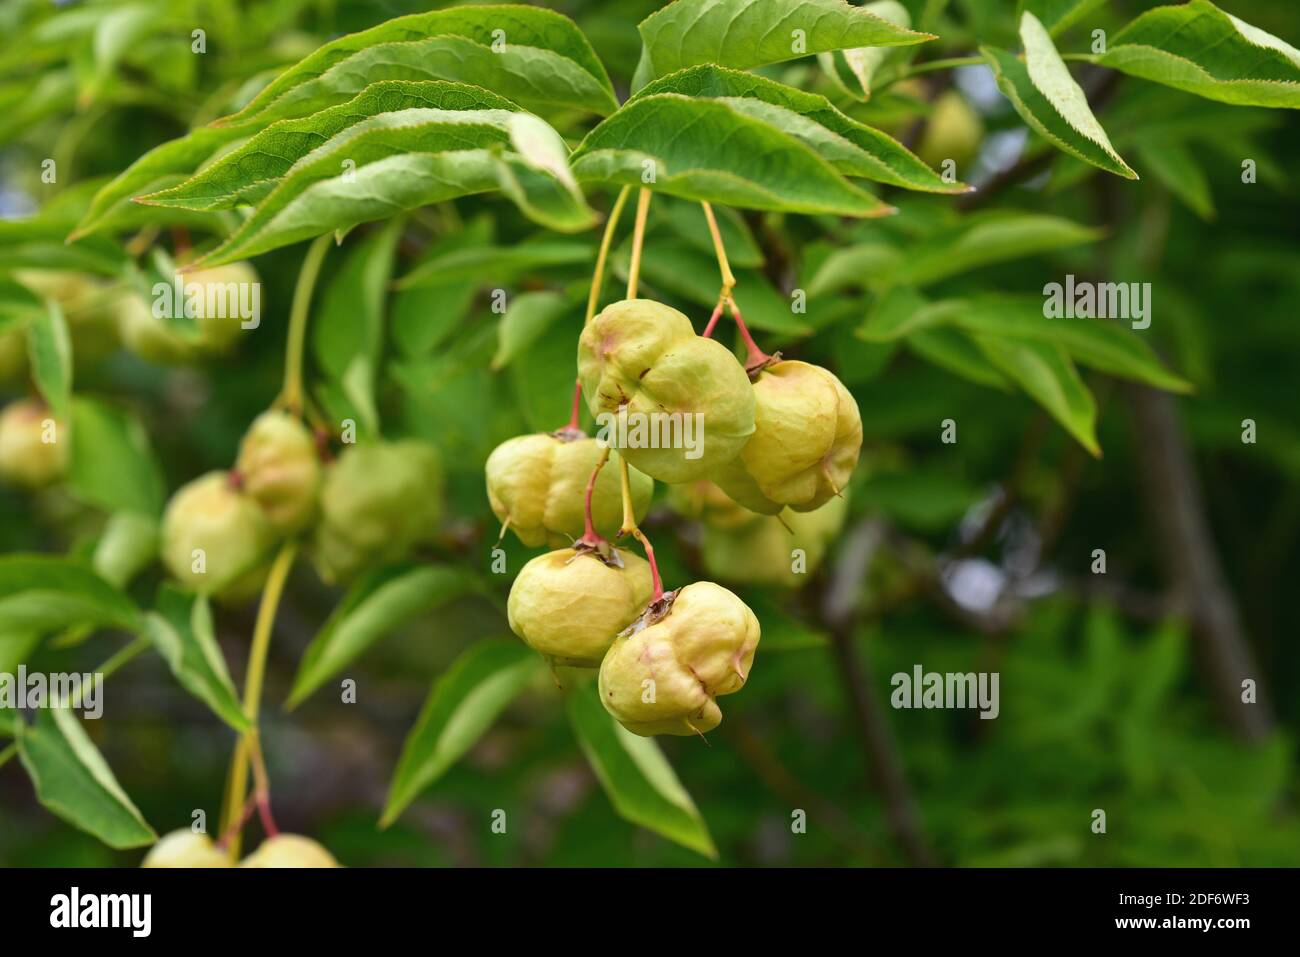 Le bladdernut européen (Staphylea pinnata) est un petit arbre originaire d'Europe centrale. Ses graines sont comestibles. Banque D'Images